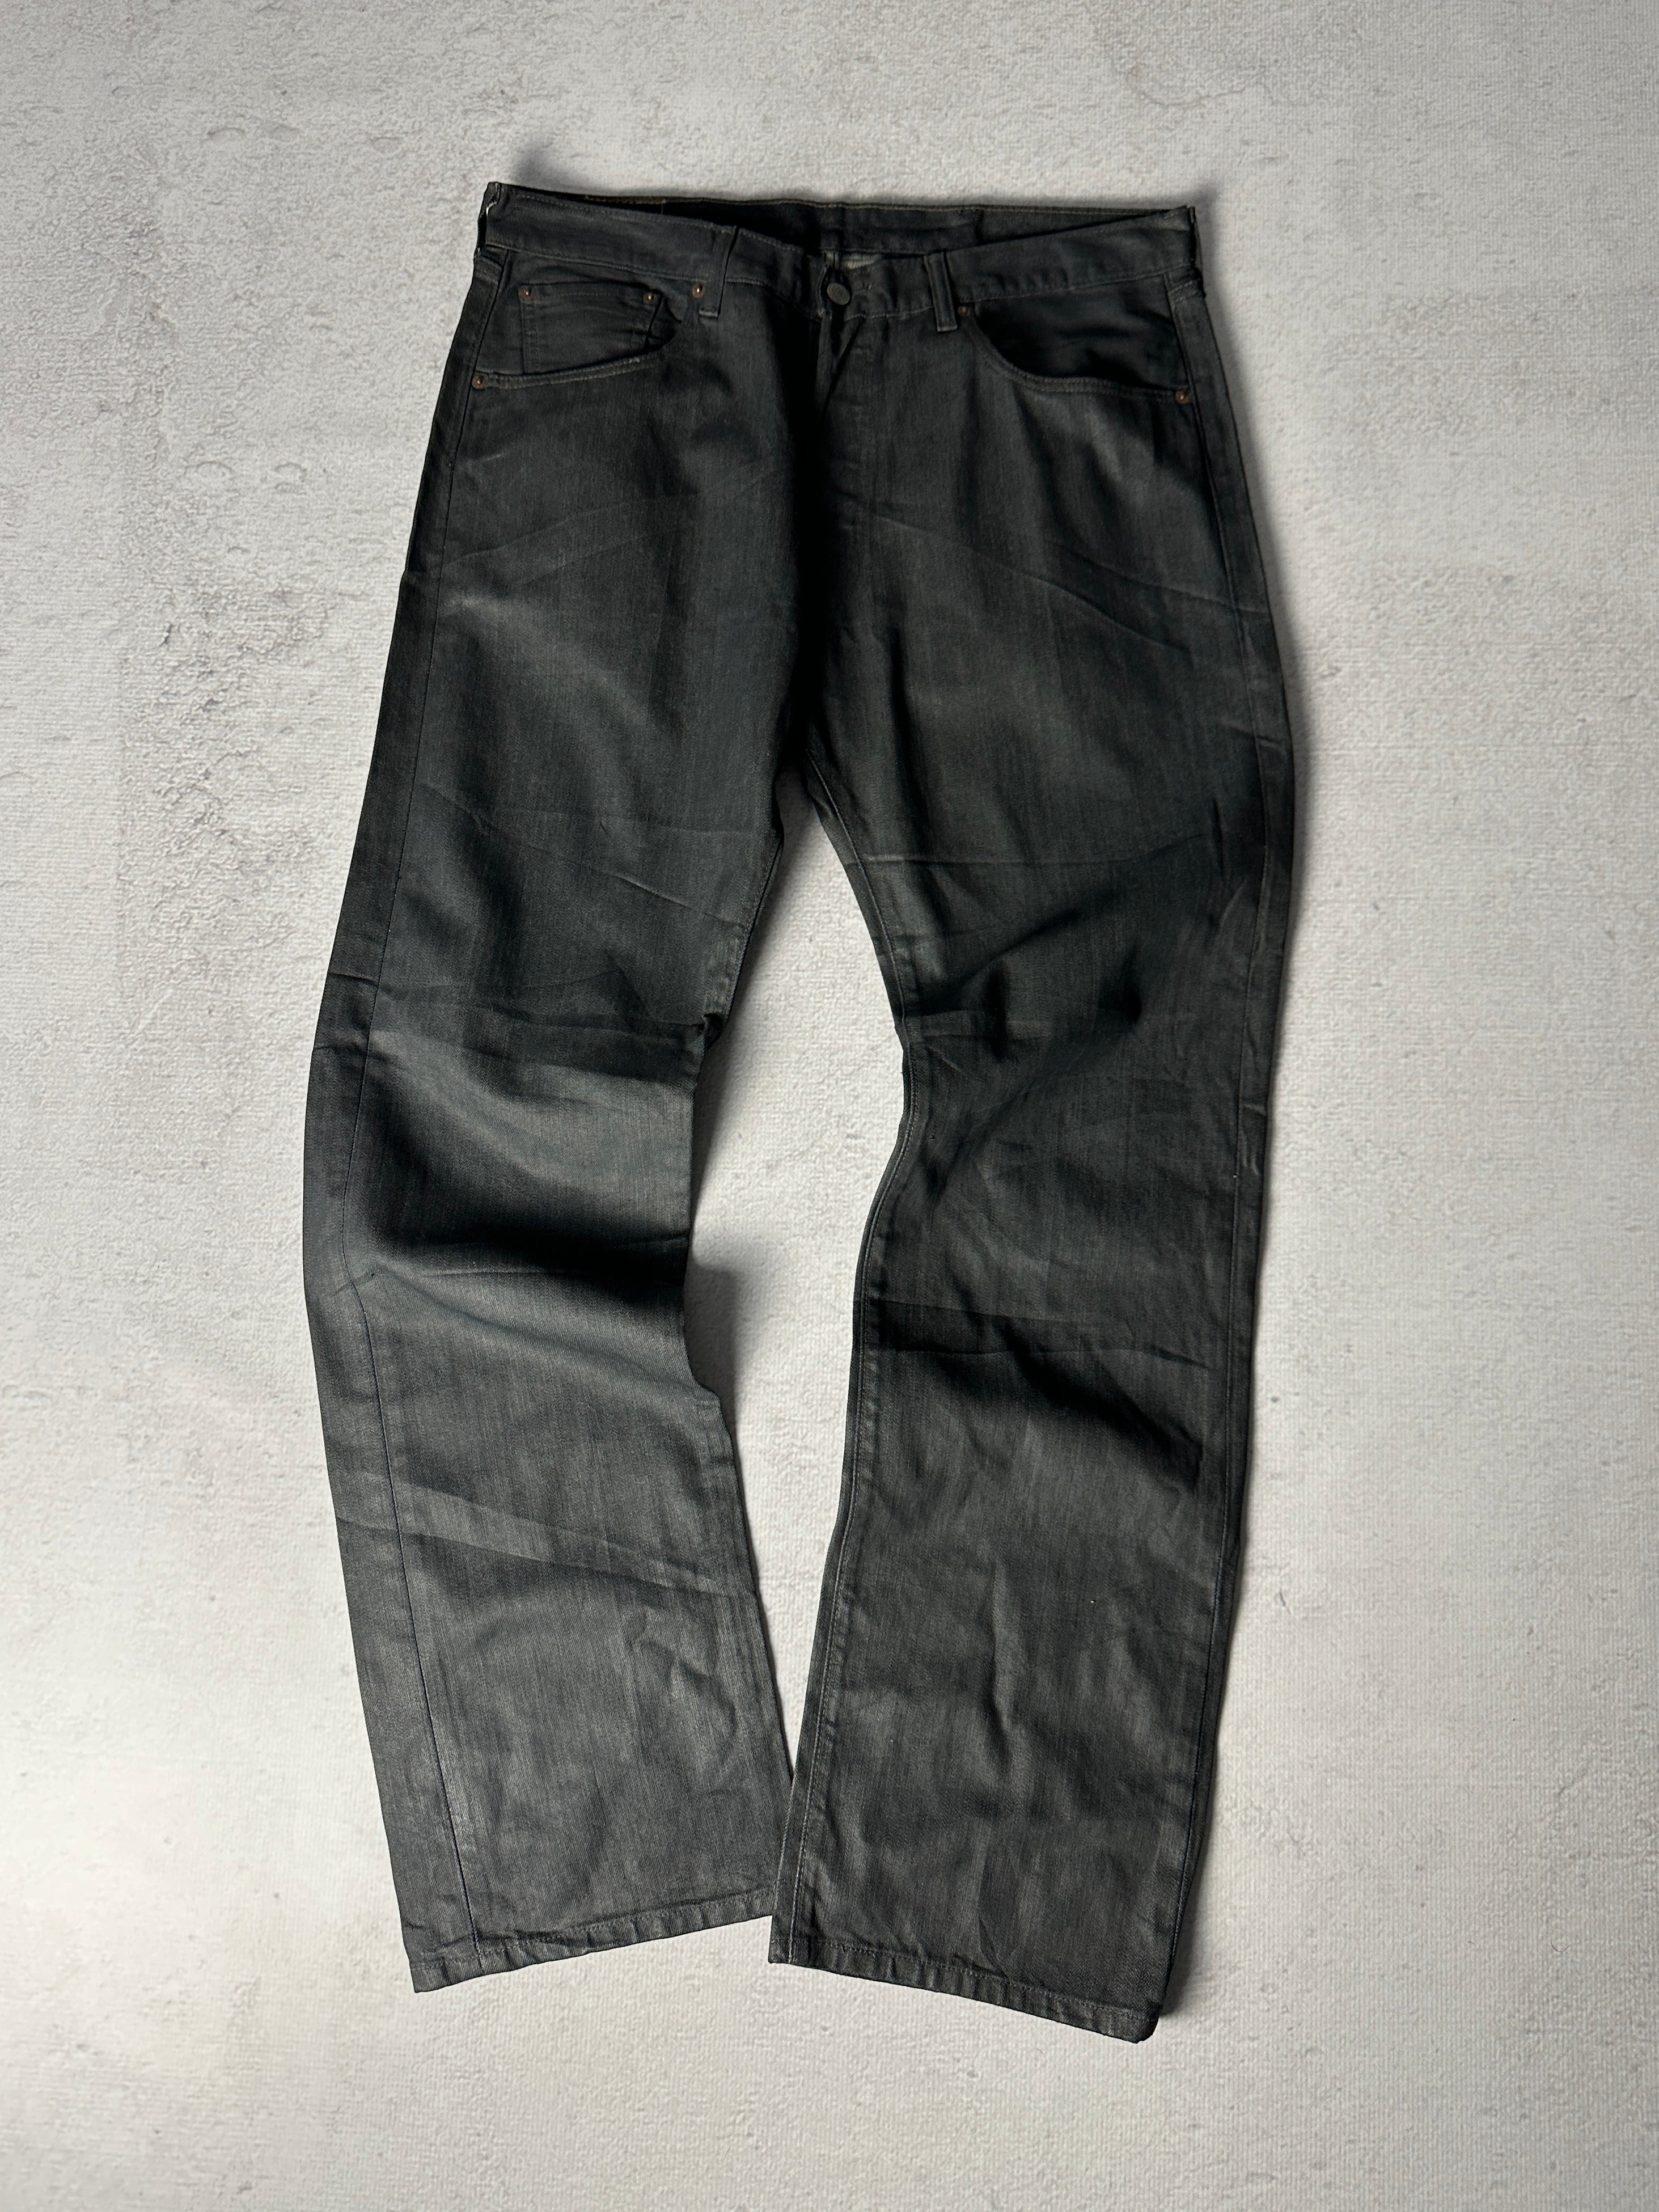 Vintage Levis 501 Jeans - Men's 38W34L